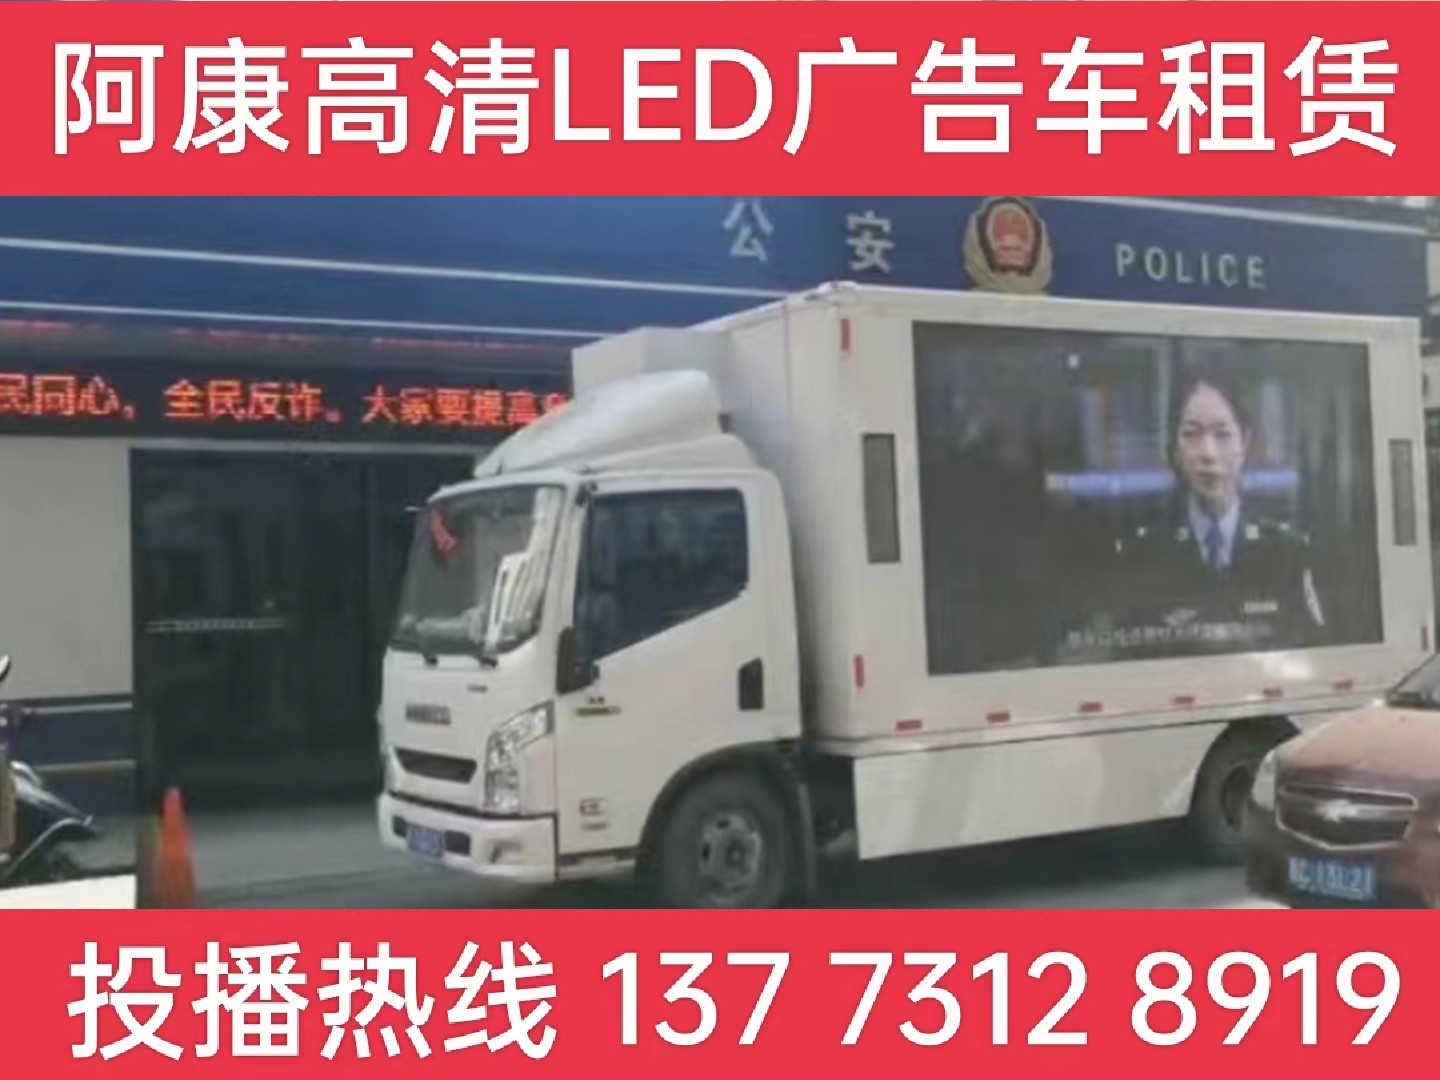 宣城LED广告车租赁-反诈宣传